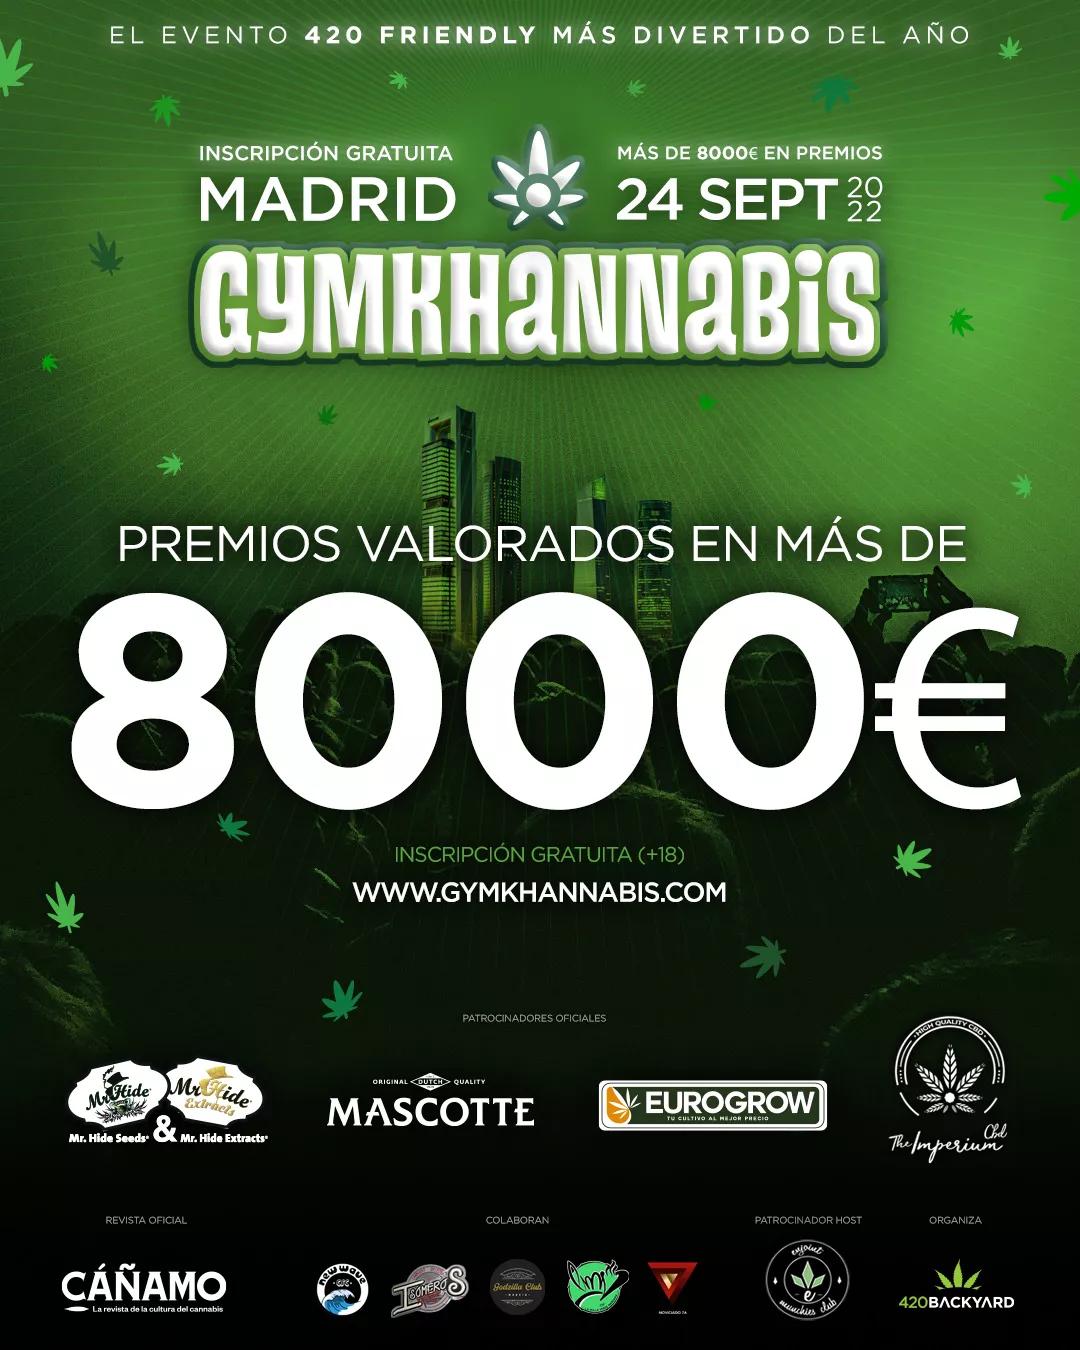 Gymkhannabis. La nueva actividad “420 friendly” que va a revolucionar Madrid.